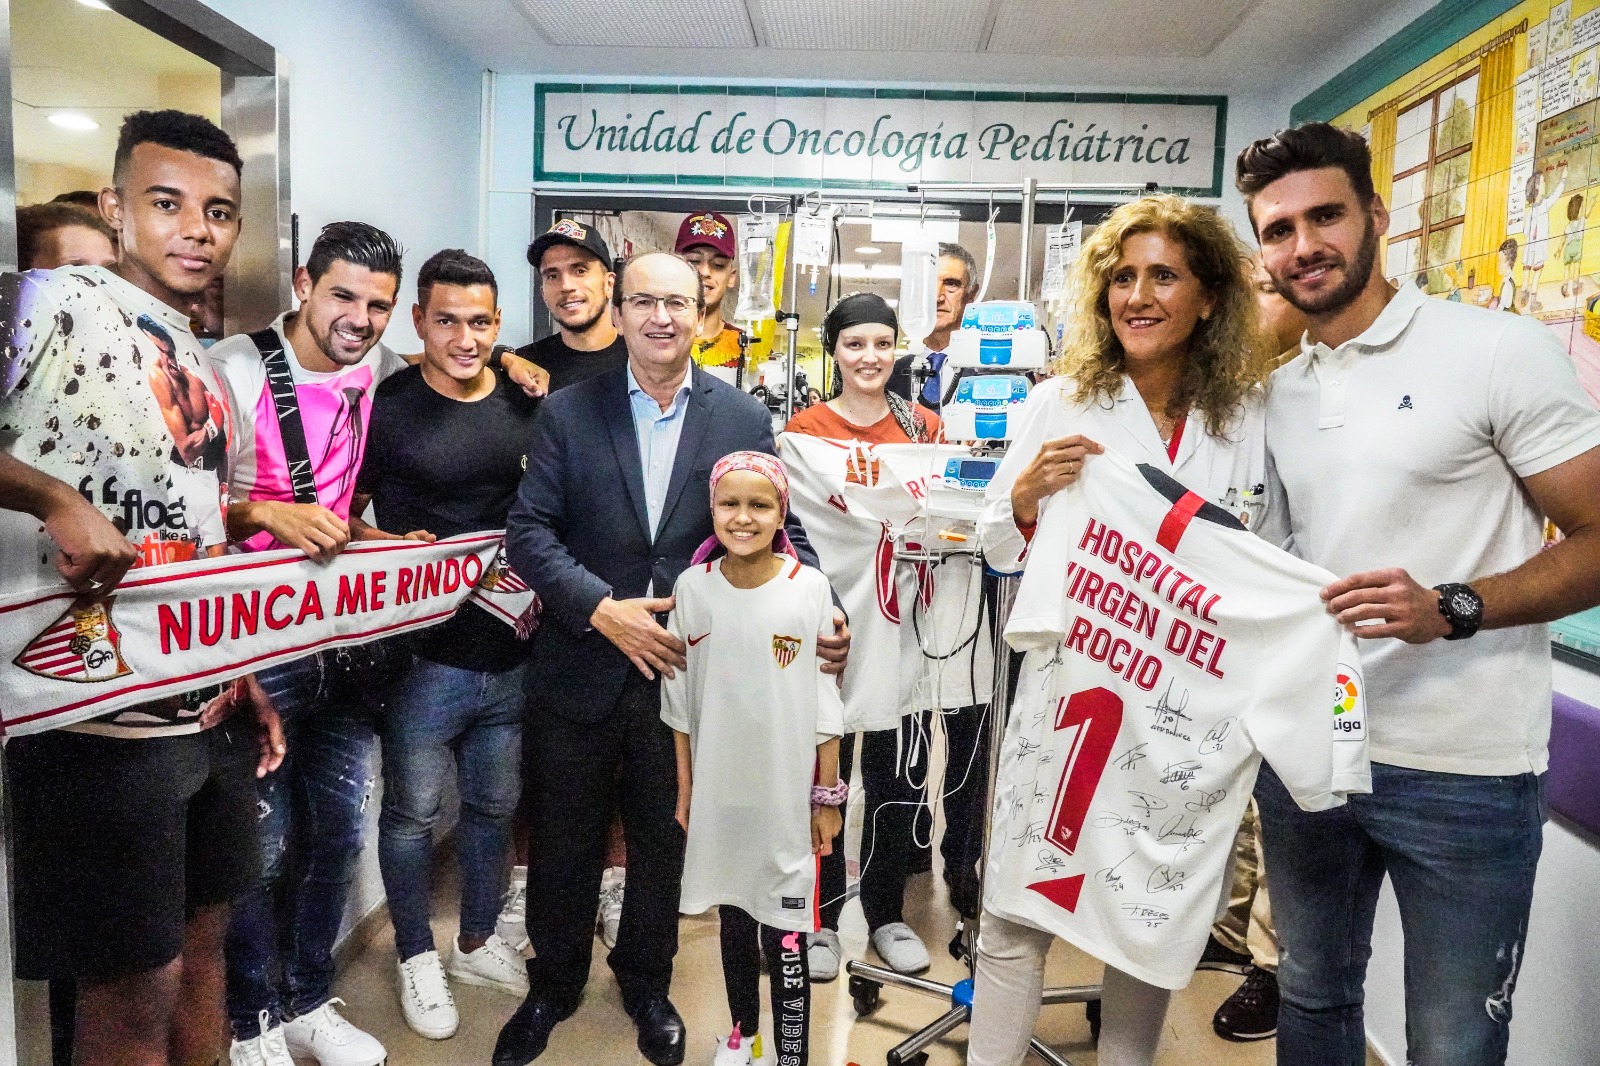 Visit to 'Hospital Virgen del Rocío' - Sevilla FC